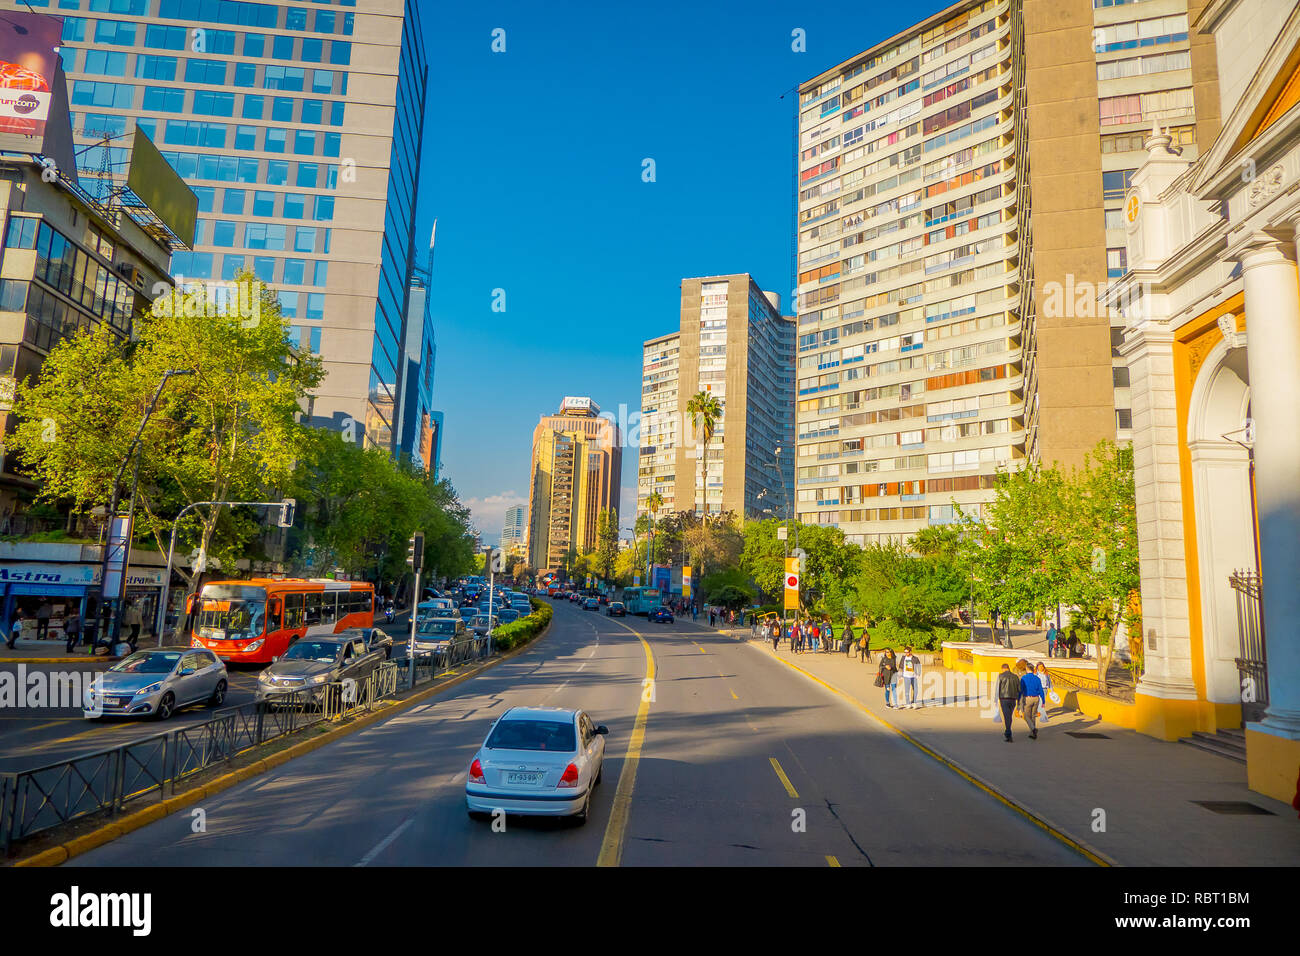 SANTIAGO DE CHILE, CHILE - OCTOBER 16, 2018: Traffic on Avenida Libertador Bernardo O'Higgins avenue in Santiago, Chile Stock Photo